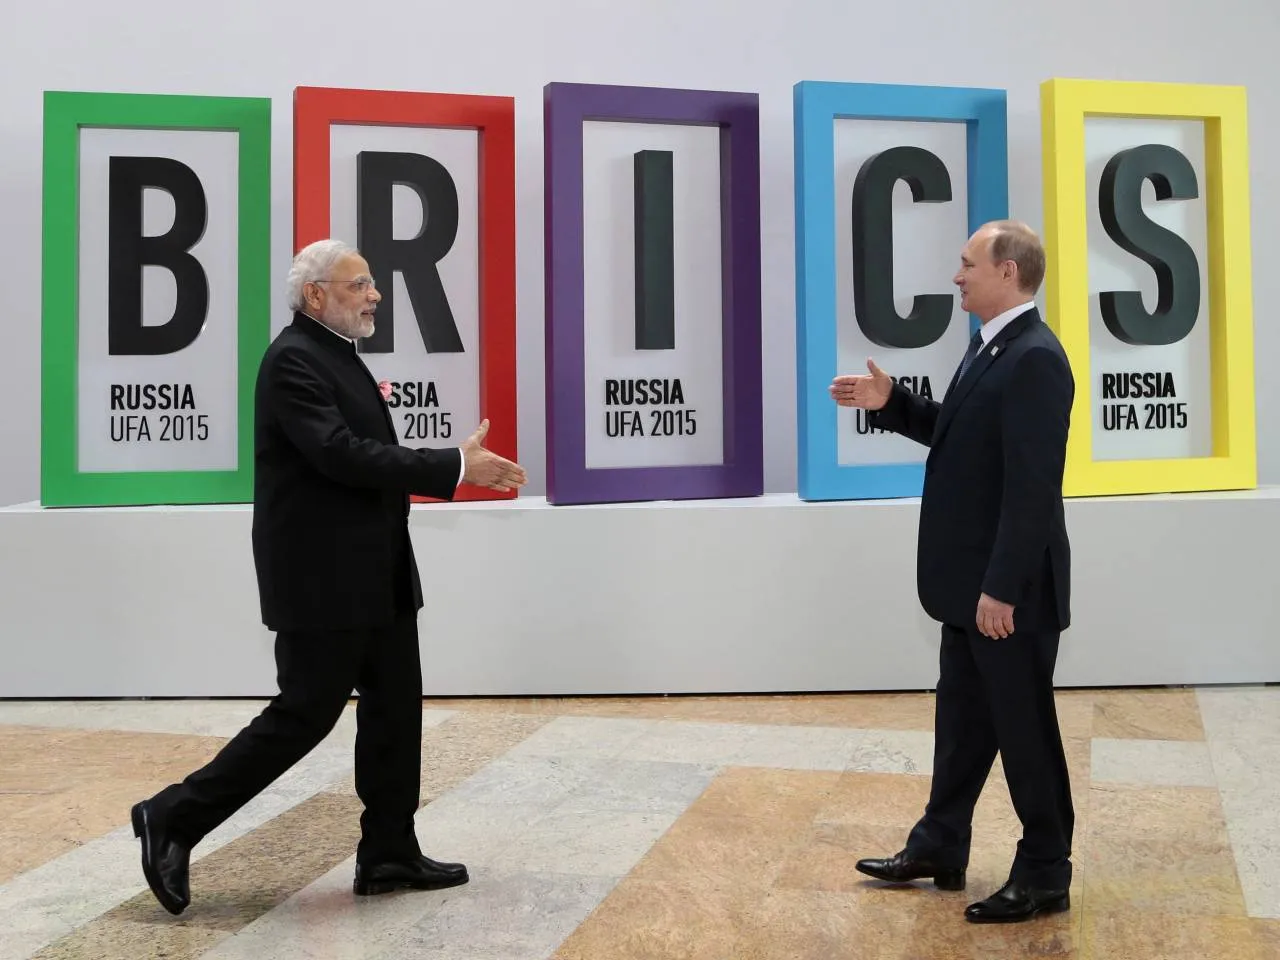 Индия между БРИКС и Содружеством наций. Что выберет Нью-Дели?